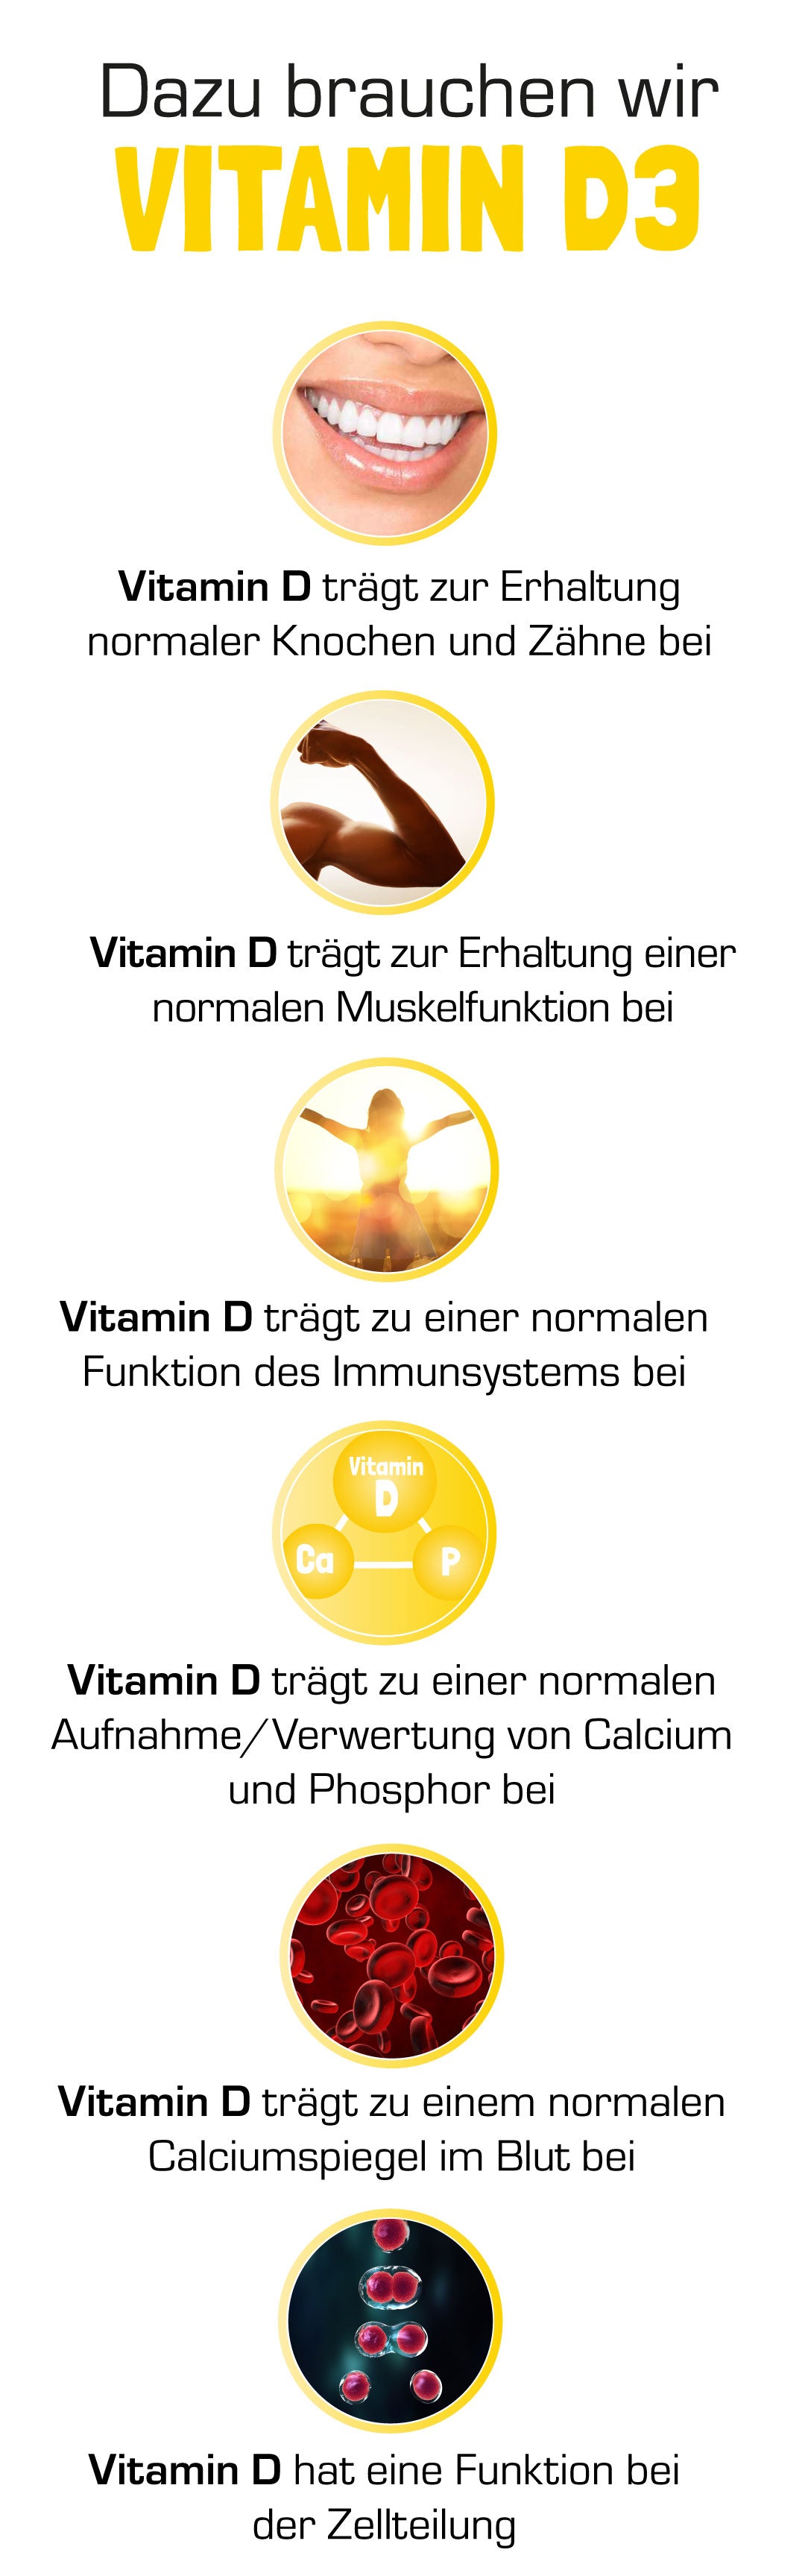 Aufgaben von Vitamin D